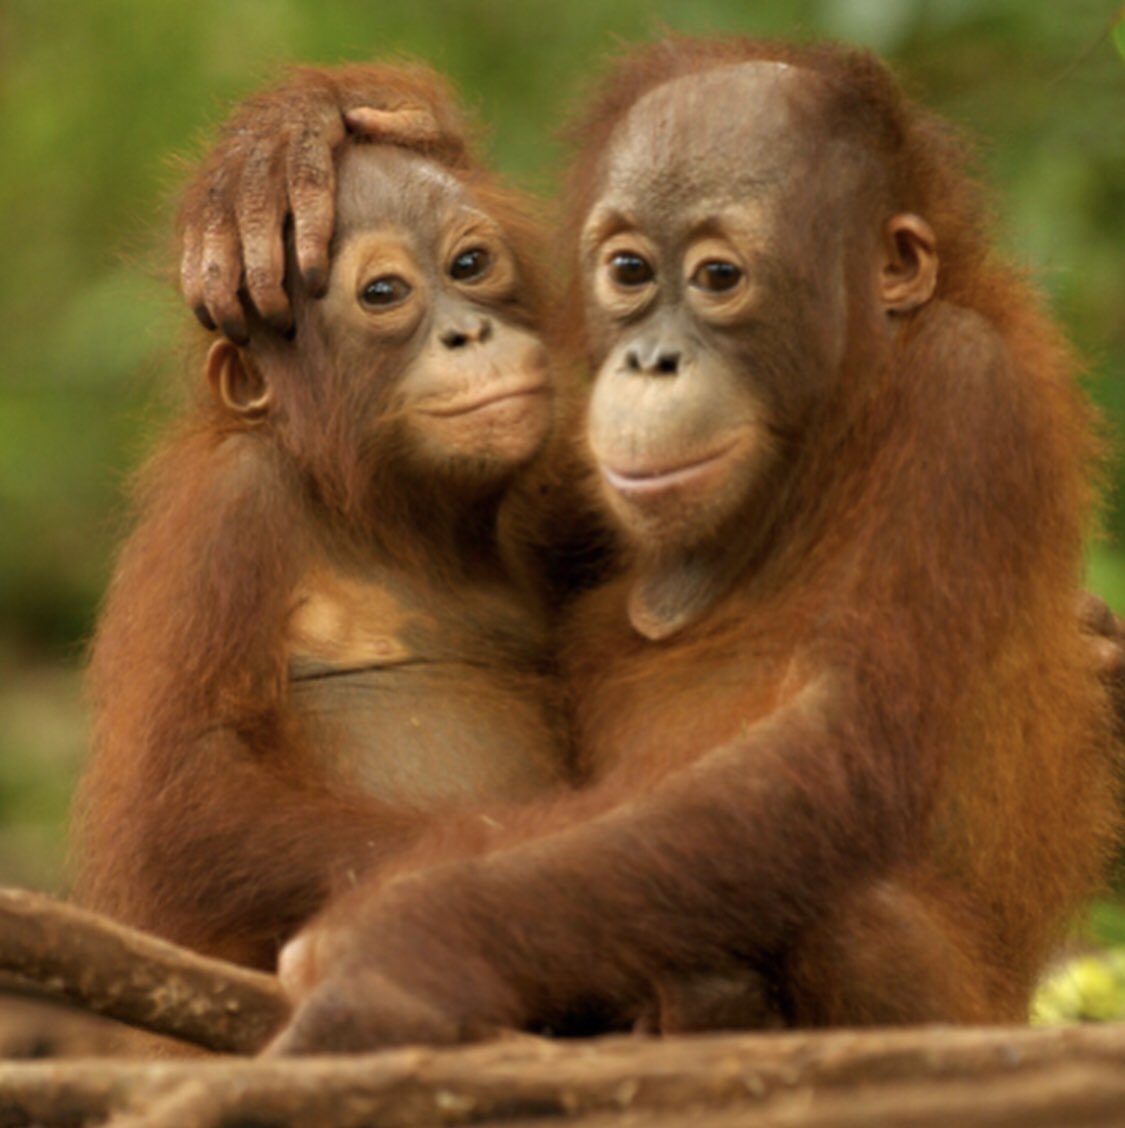 Bugün Dünya Orangutan Günü! “Odama bir orangutan girmiş.” Beren Saat, palm yağı endüstrisi tehditi altındaki orangutanların sesi oldu! Sen da palm yağı endüstrisine karşı mücadeleye katıl: Orangutanlarikoru.org #orangutangünü @Greenpeace_Med